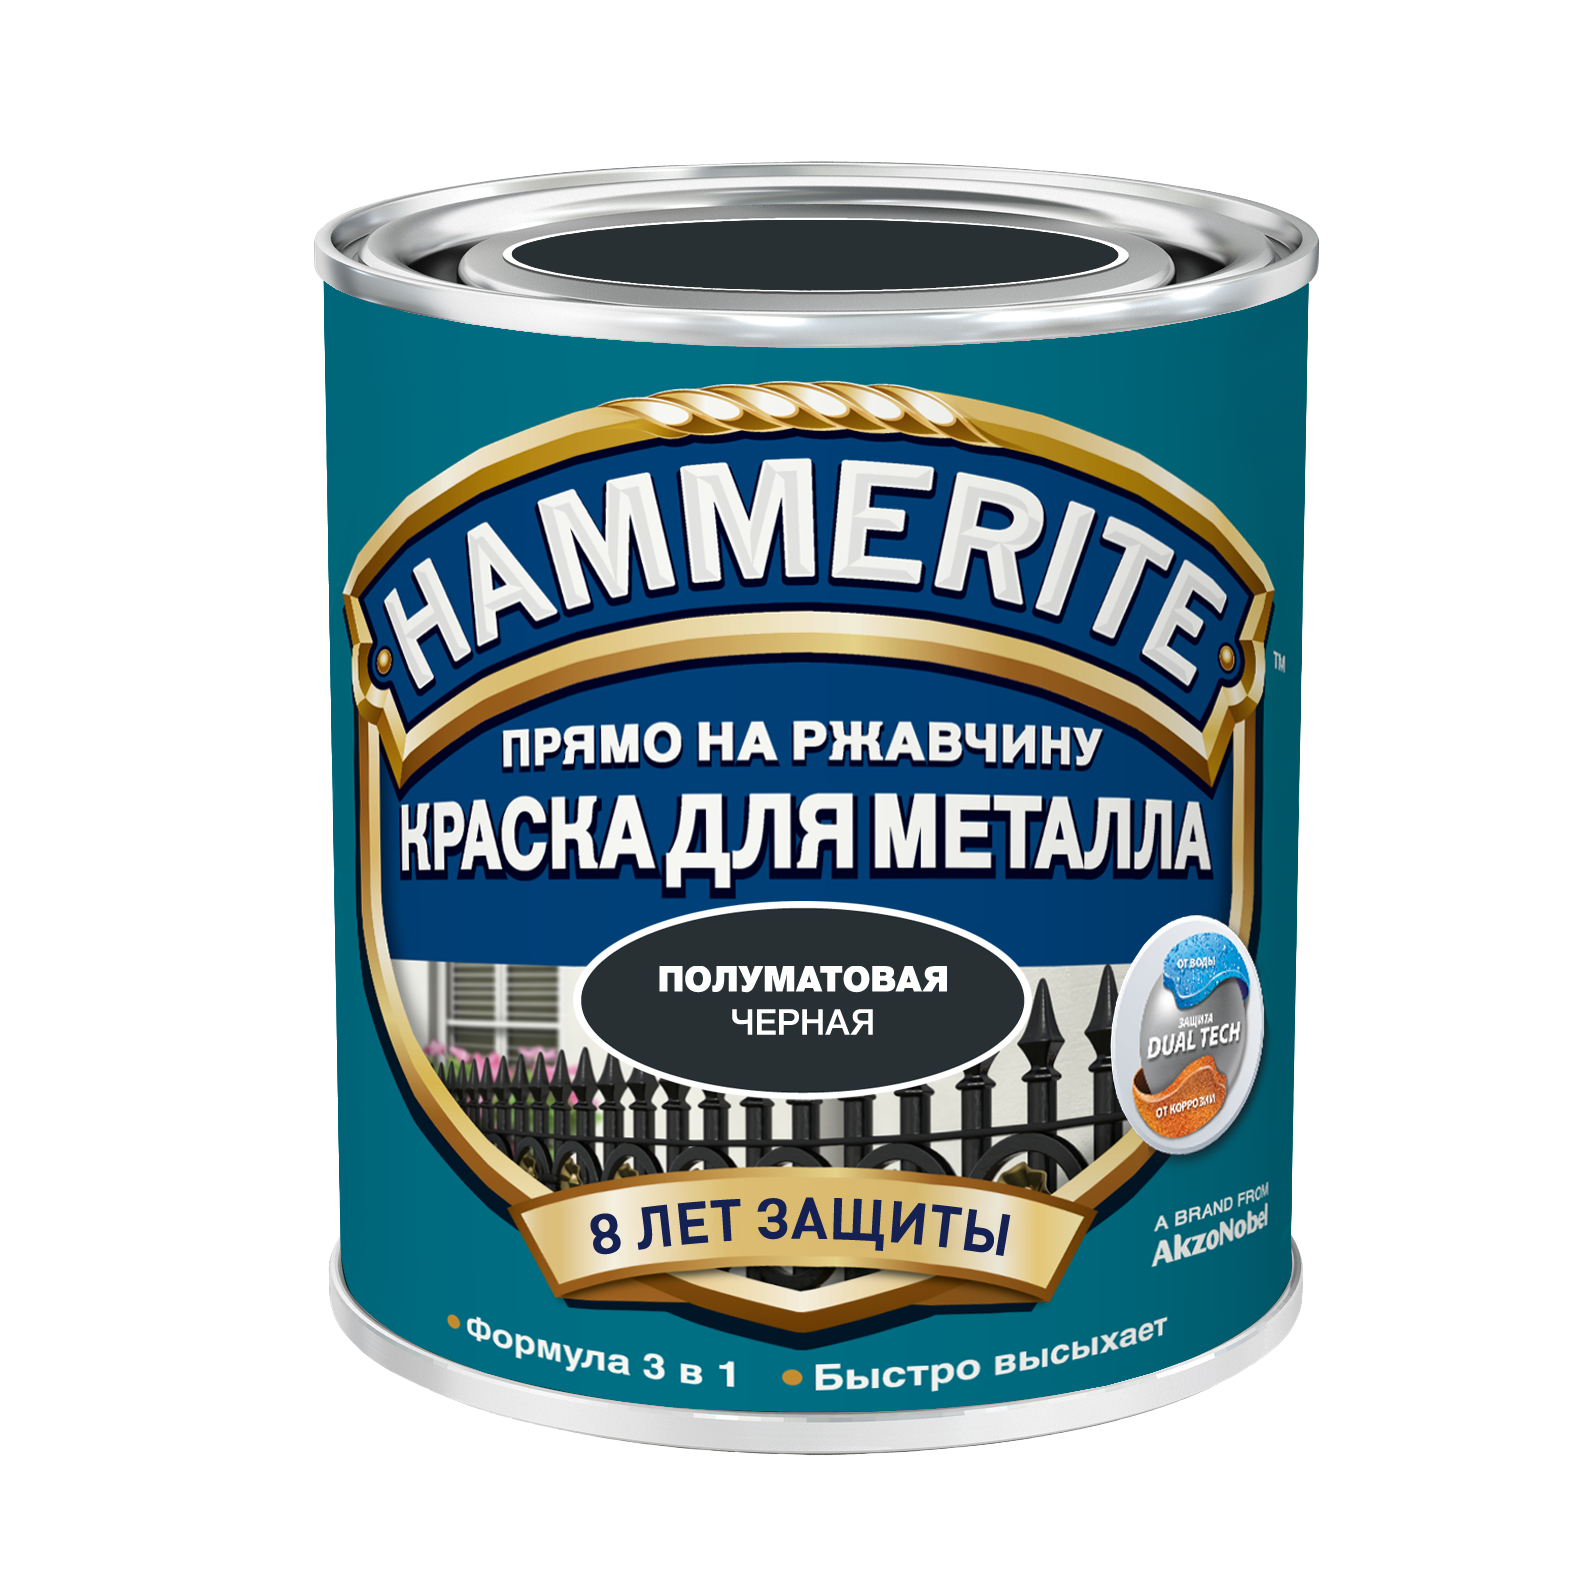 Грунт-эмаль 3 в 1 Хаммерайт/Hammerite полуматовая купить Коломна, цена, отзывы. Фото N2